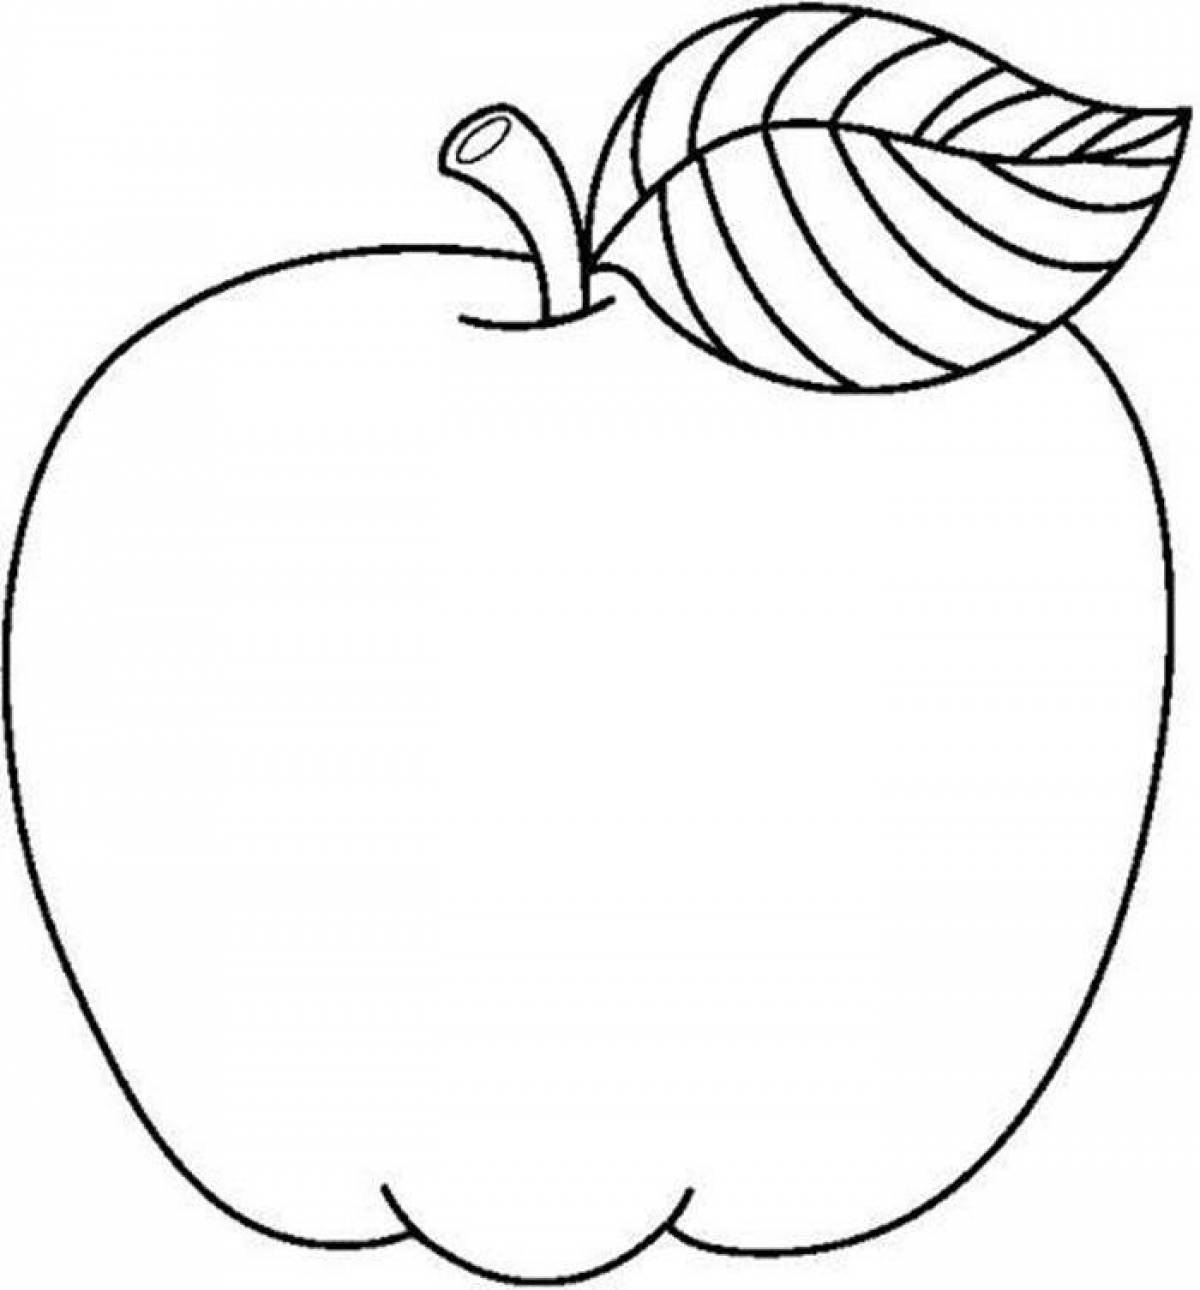 Книжка-раскраска для детей: фрукты и овощи (яблоки)